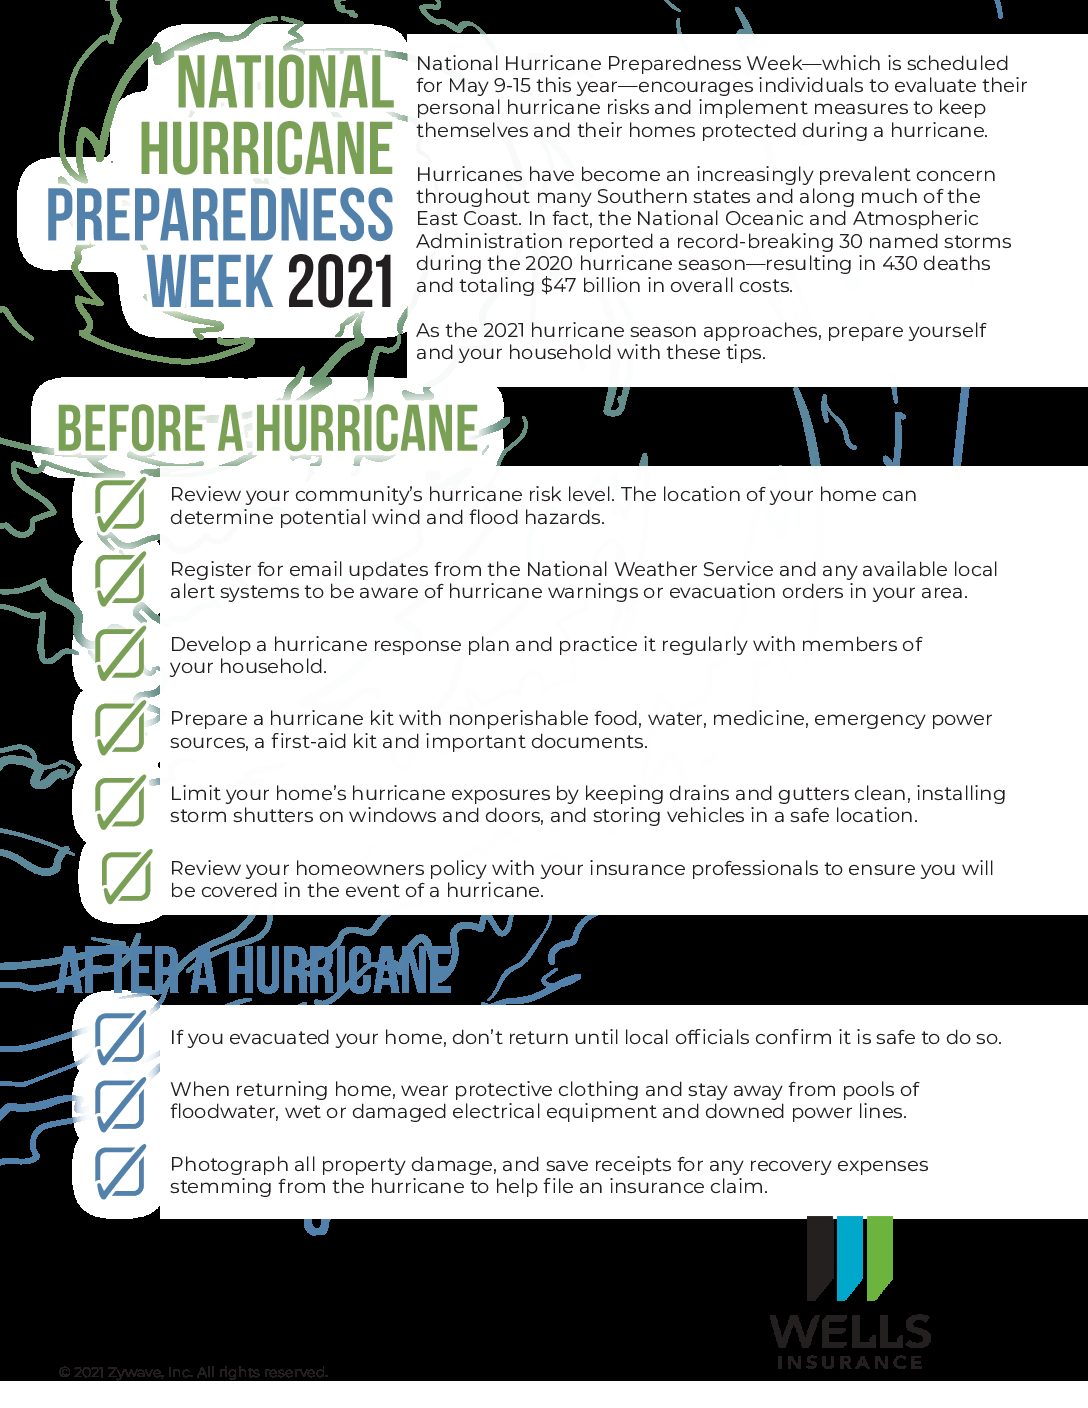 National Hurricane Preparedness Week 2021